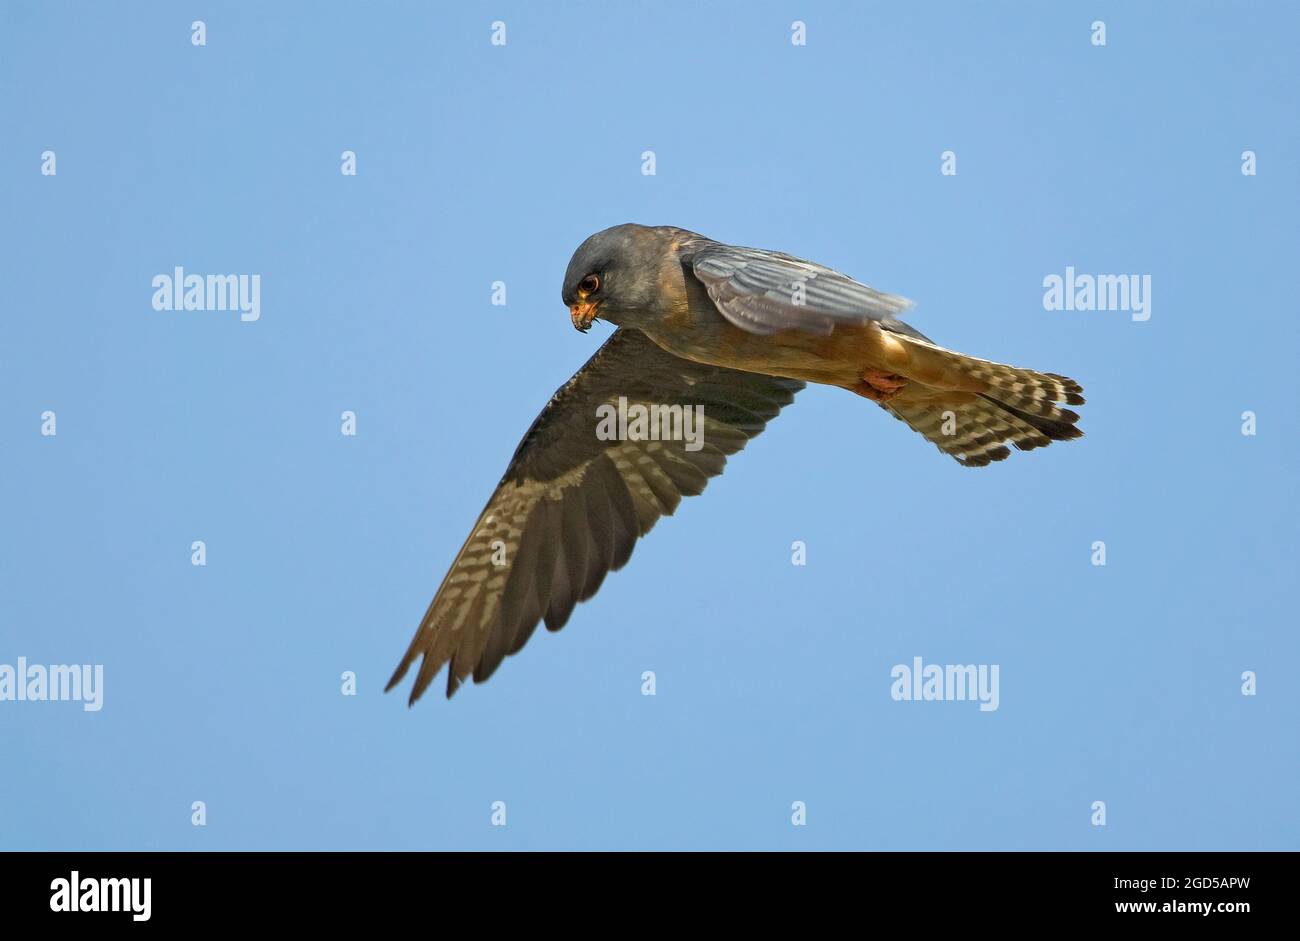 Rotfußfalke (falco vespertinus) im Flug mit blauem Himmel. Dieser Greifvogel wird in Osteuropa und Asien gefunden, ist aber zu einem Ne geworden Stockfoto